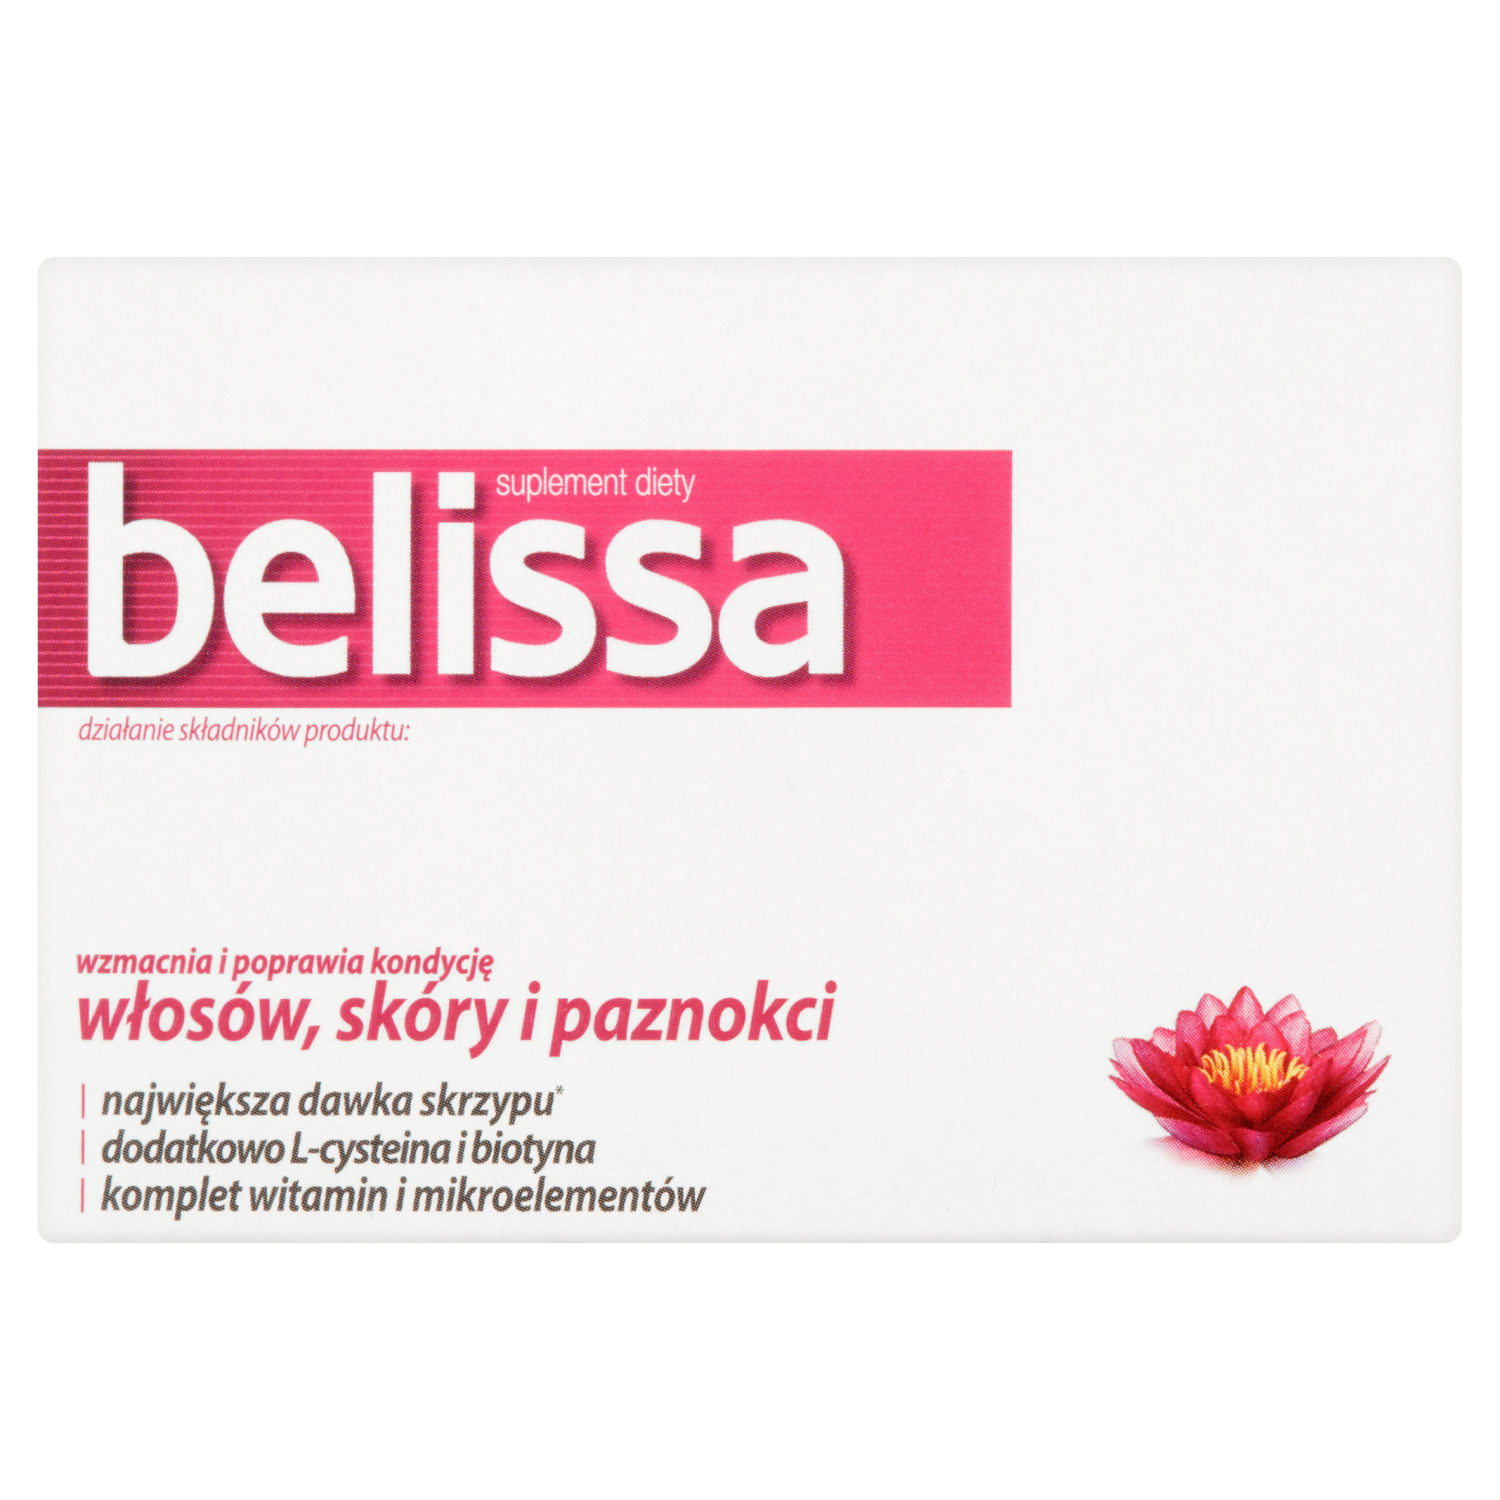 vita miner prenatal биологически активная добавка 60 таблеток 1 упаковка Belissa биологически активная добавка, 60 таблеток/1 упаковка